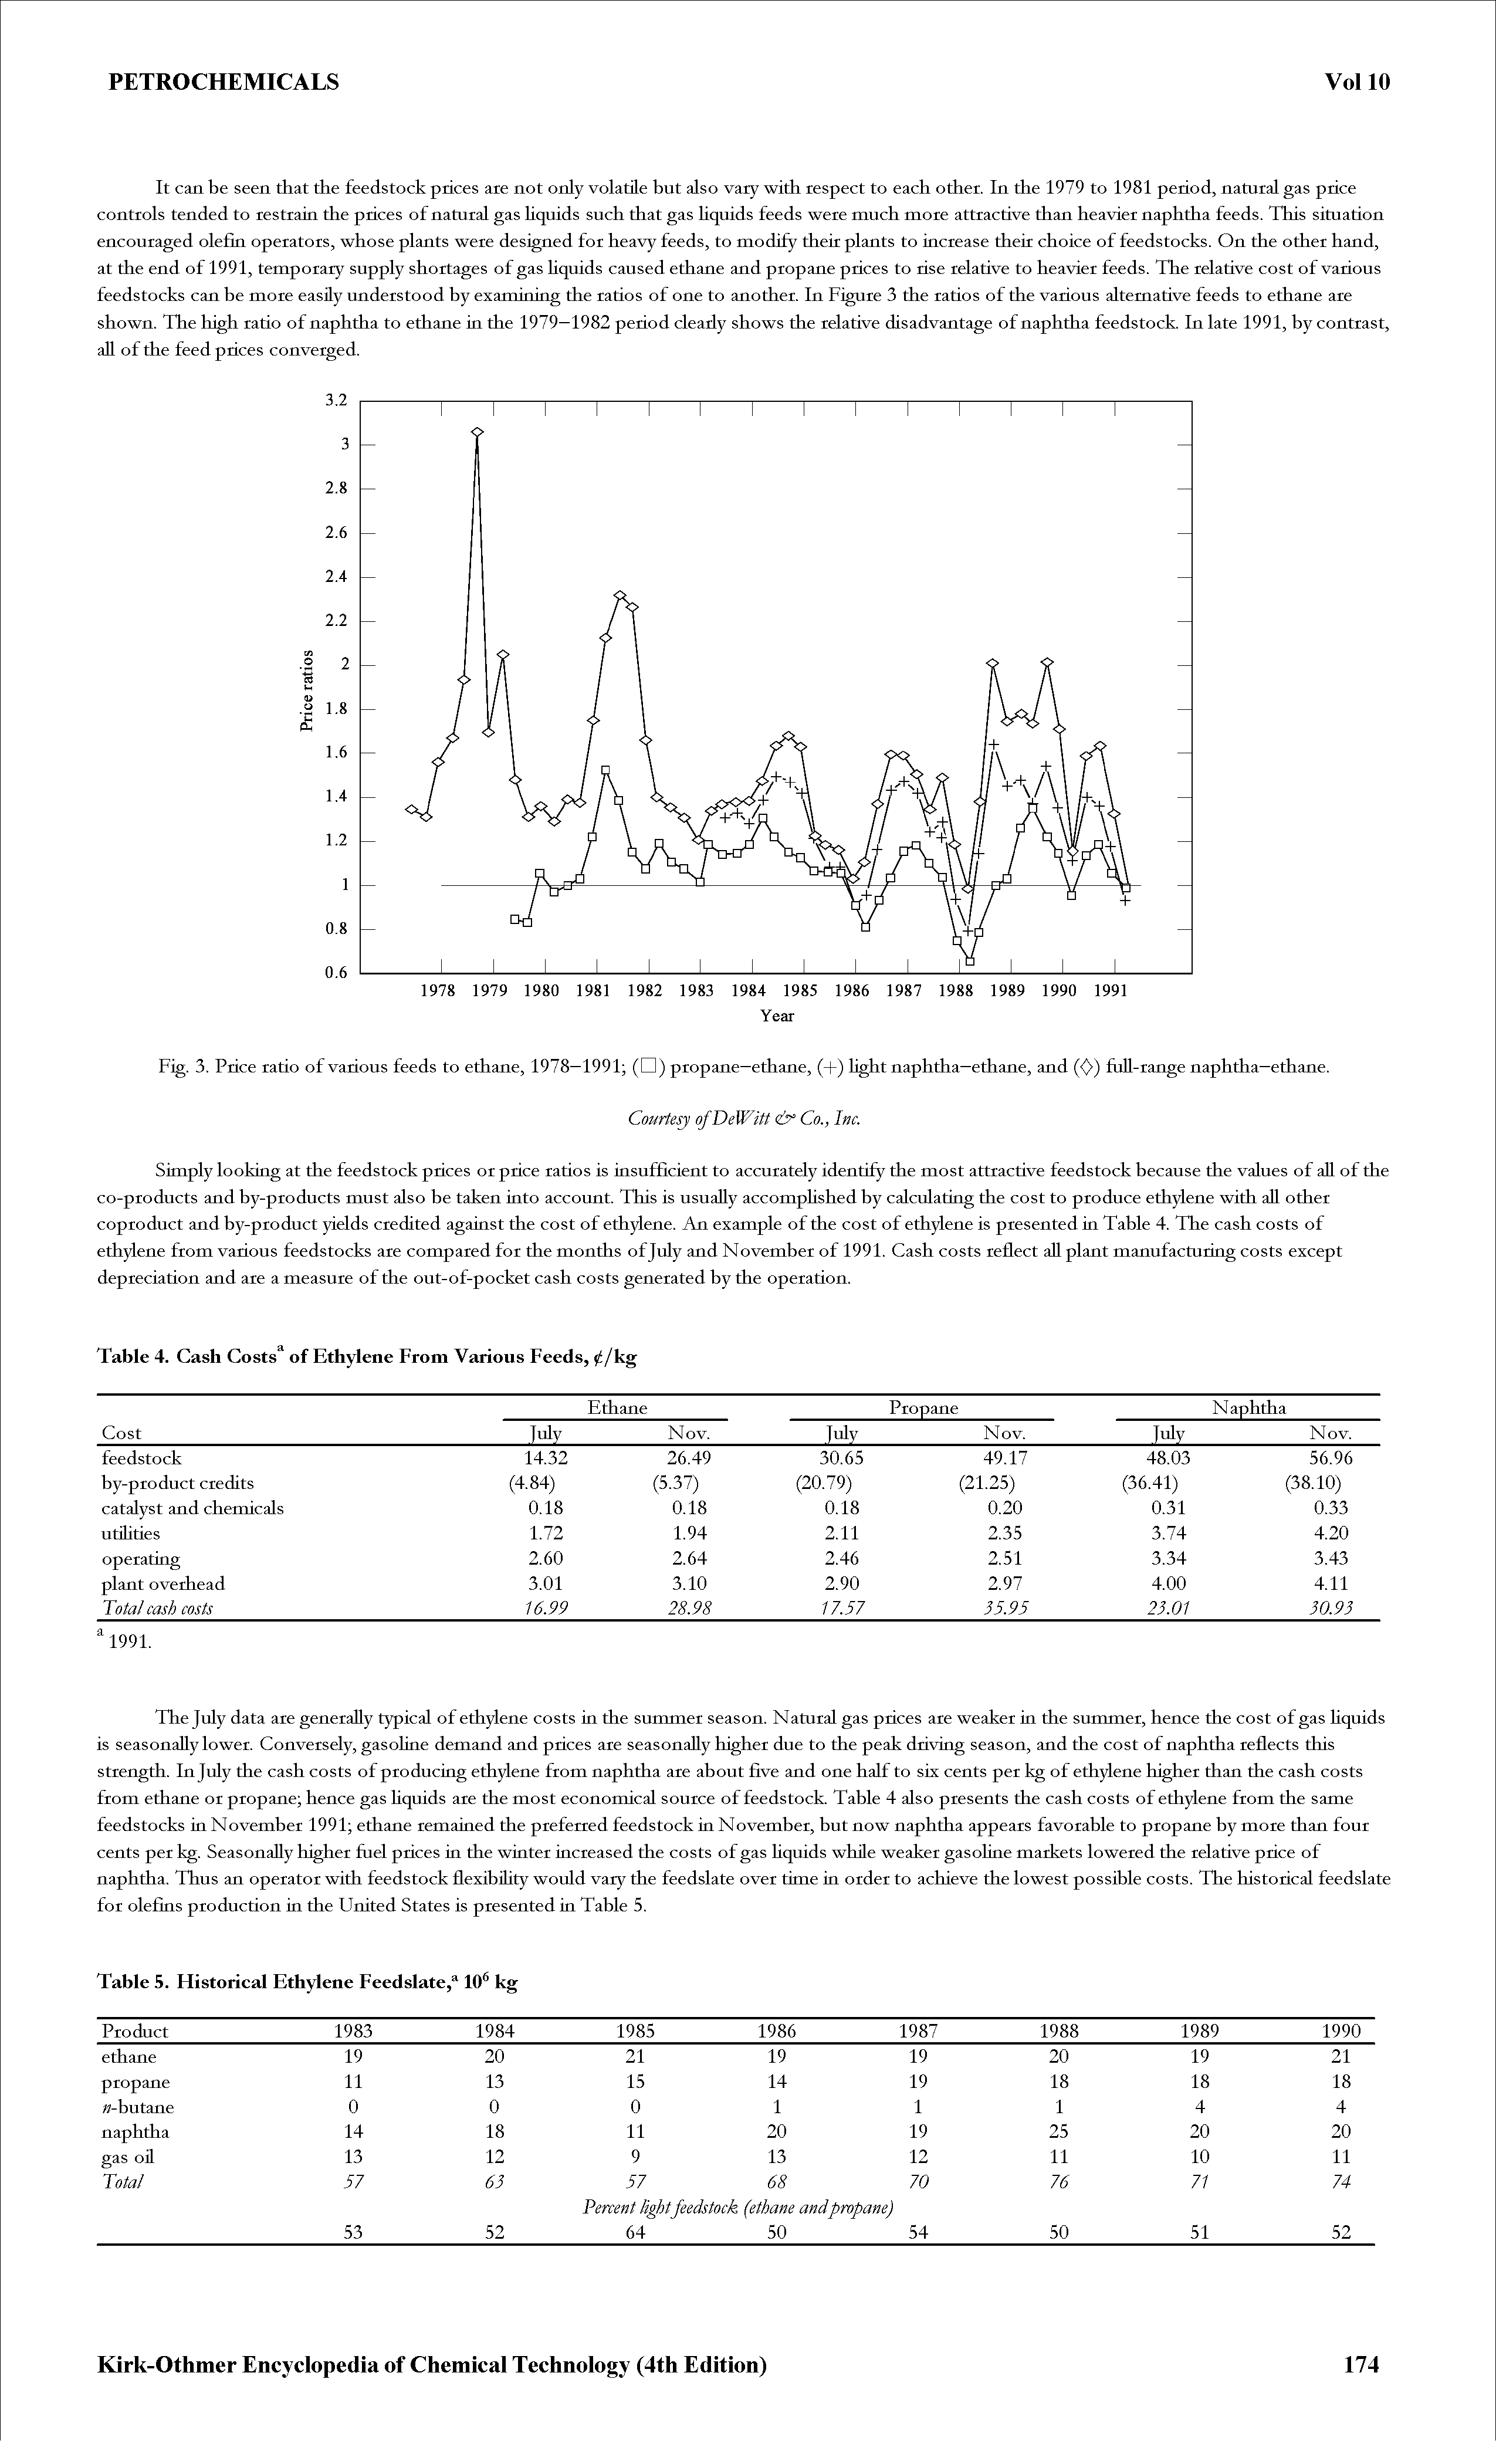 Fig. 3. Price ratio of various feeds to ethane, 1978—1991 (D) propane—ethane, (+) light naphtha—ethane, and (<)) fuU-range naphtha—ethane.